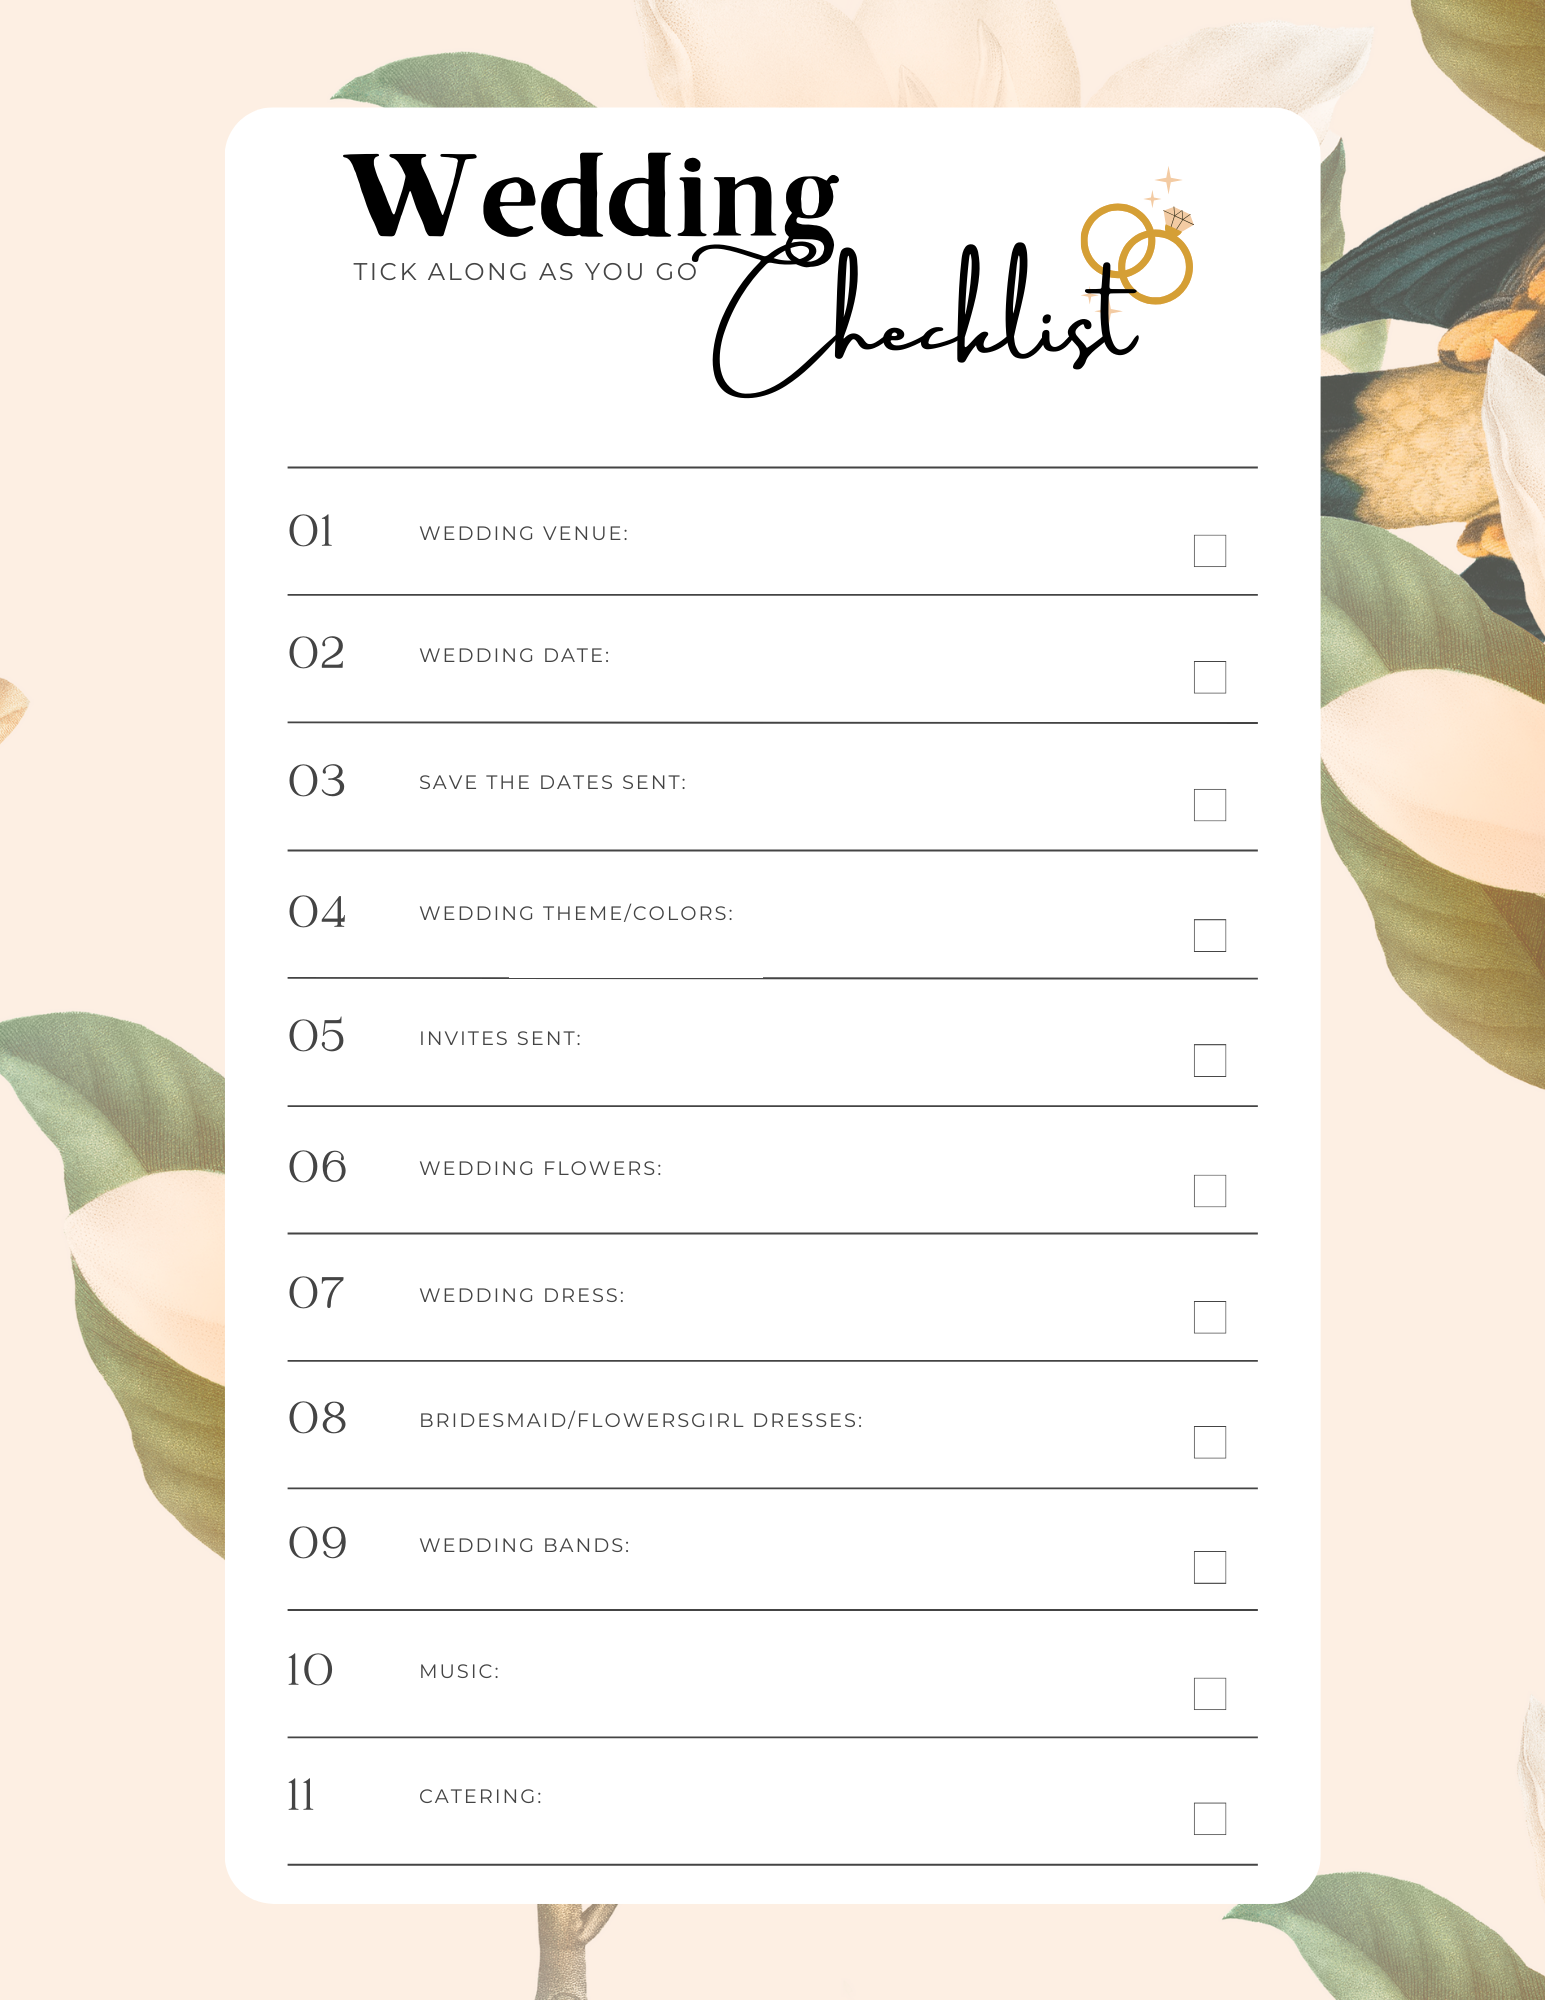 wedding checklist graphic